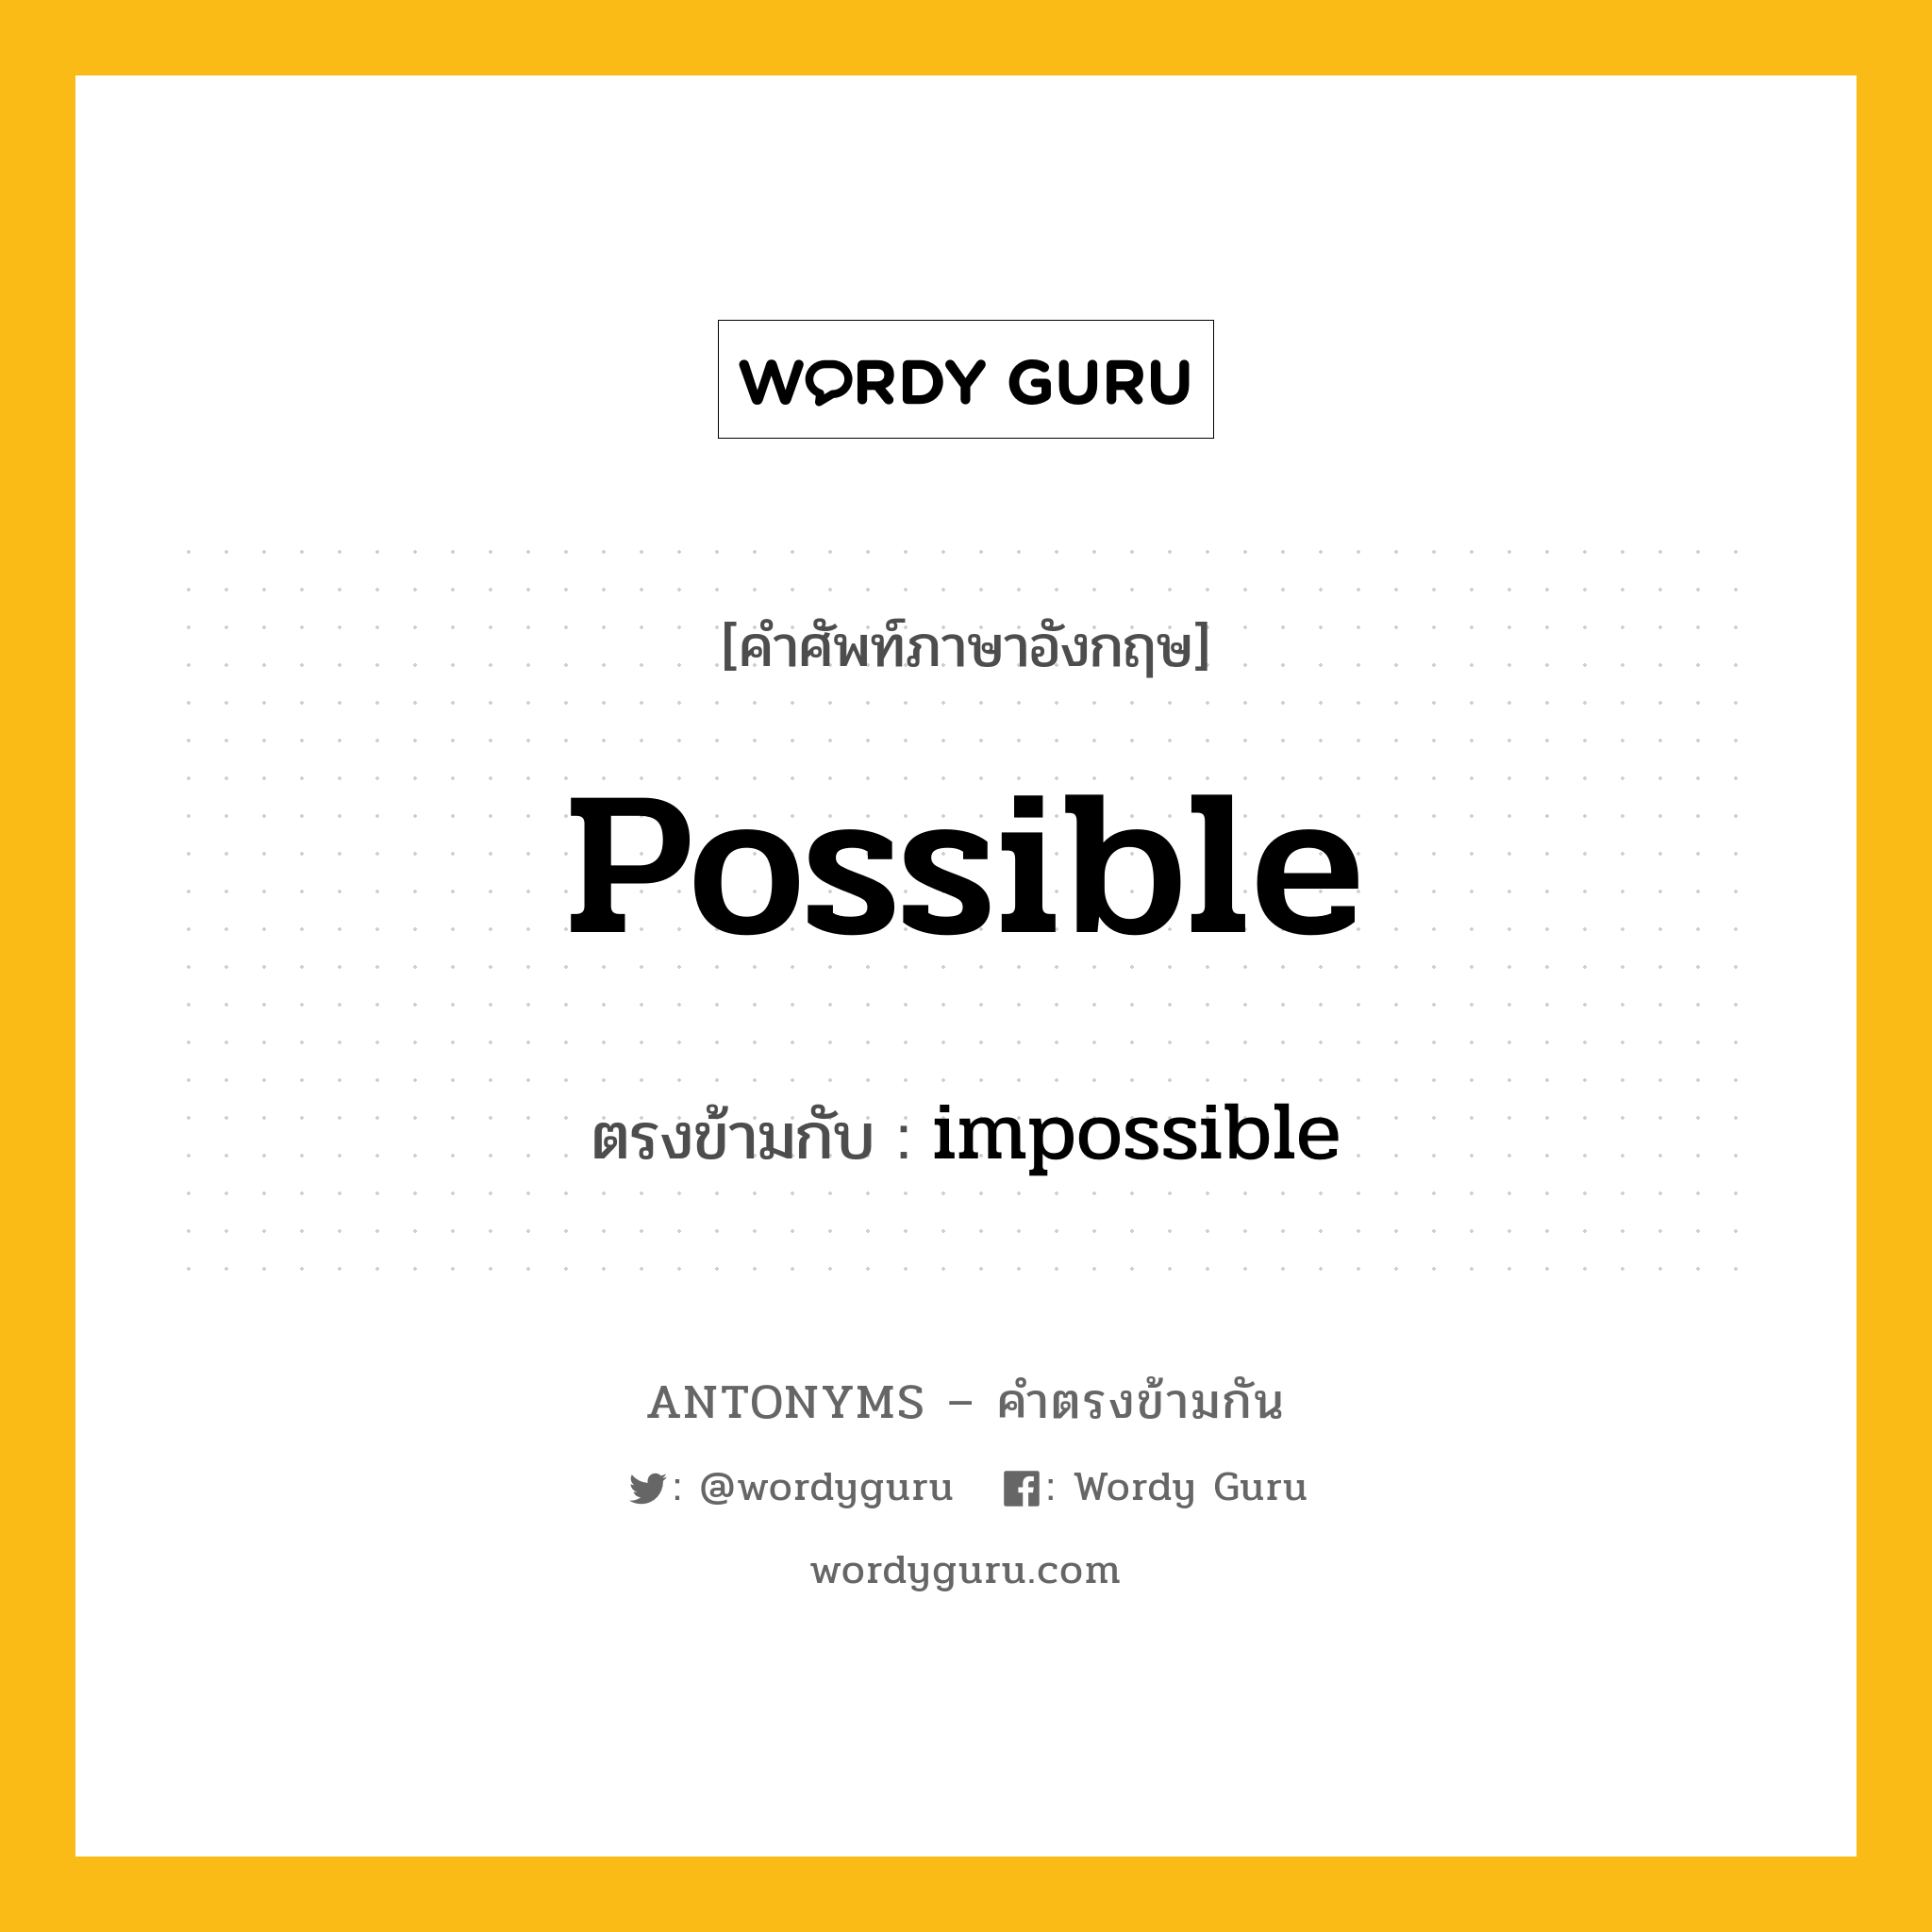 possible เป็นคำตรงข้ามกับคำไหนบ้าง?, คำศัพท์ภาษาอังกฤษ possible ตรงข้ามกับ impossible หมวด impossible